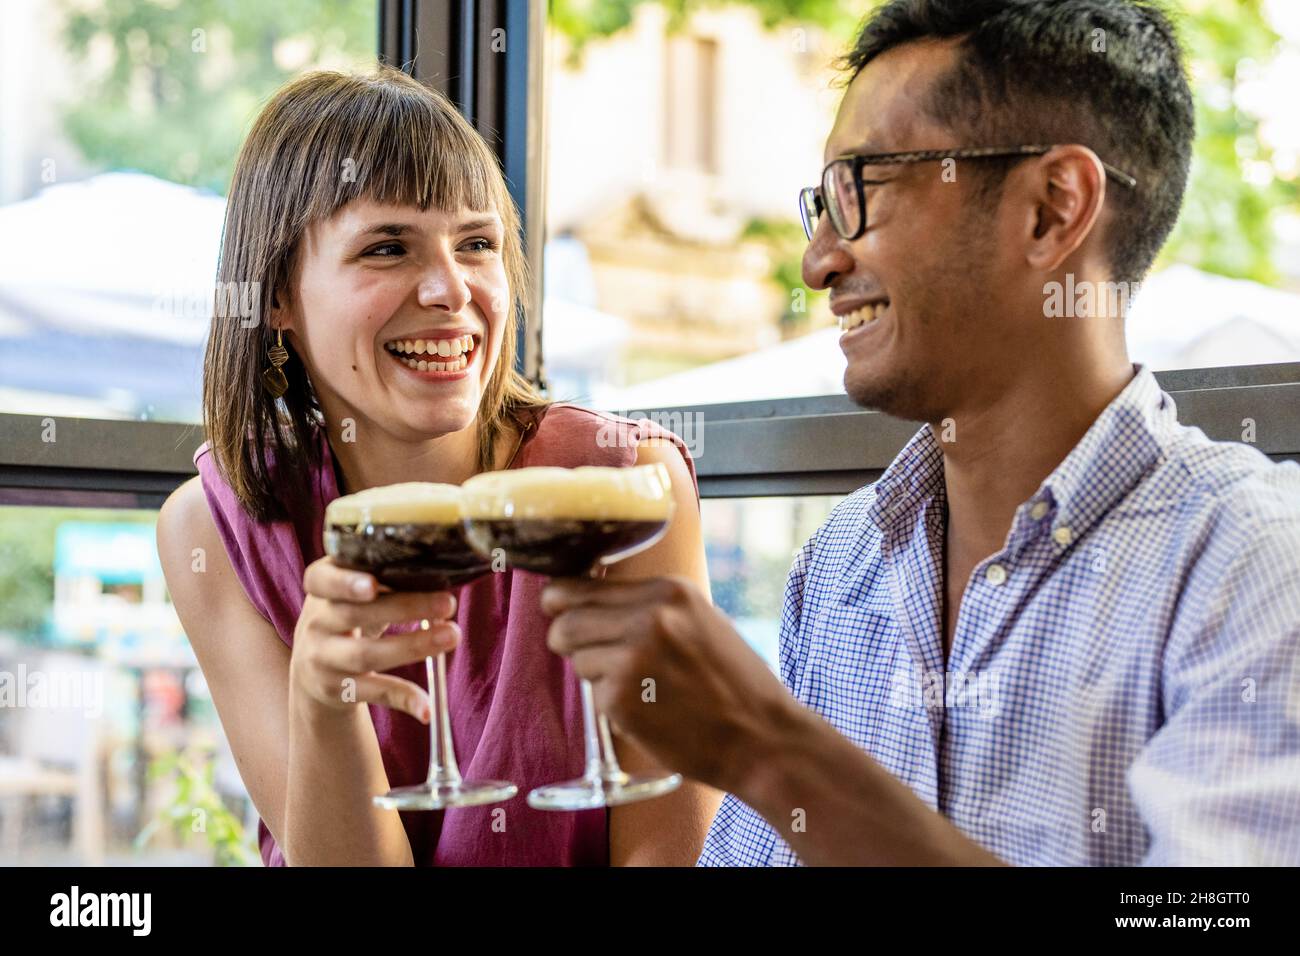 Glückliches junges Paar in einer Bar entspannen einen kalten Kaffee trinken, junge Liebhaber einander, Liebe und Zärtlichkeit, Beziehungskonzept Stockfoto